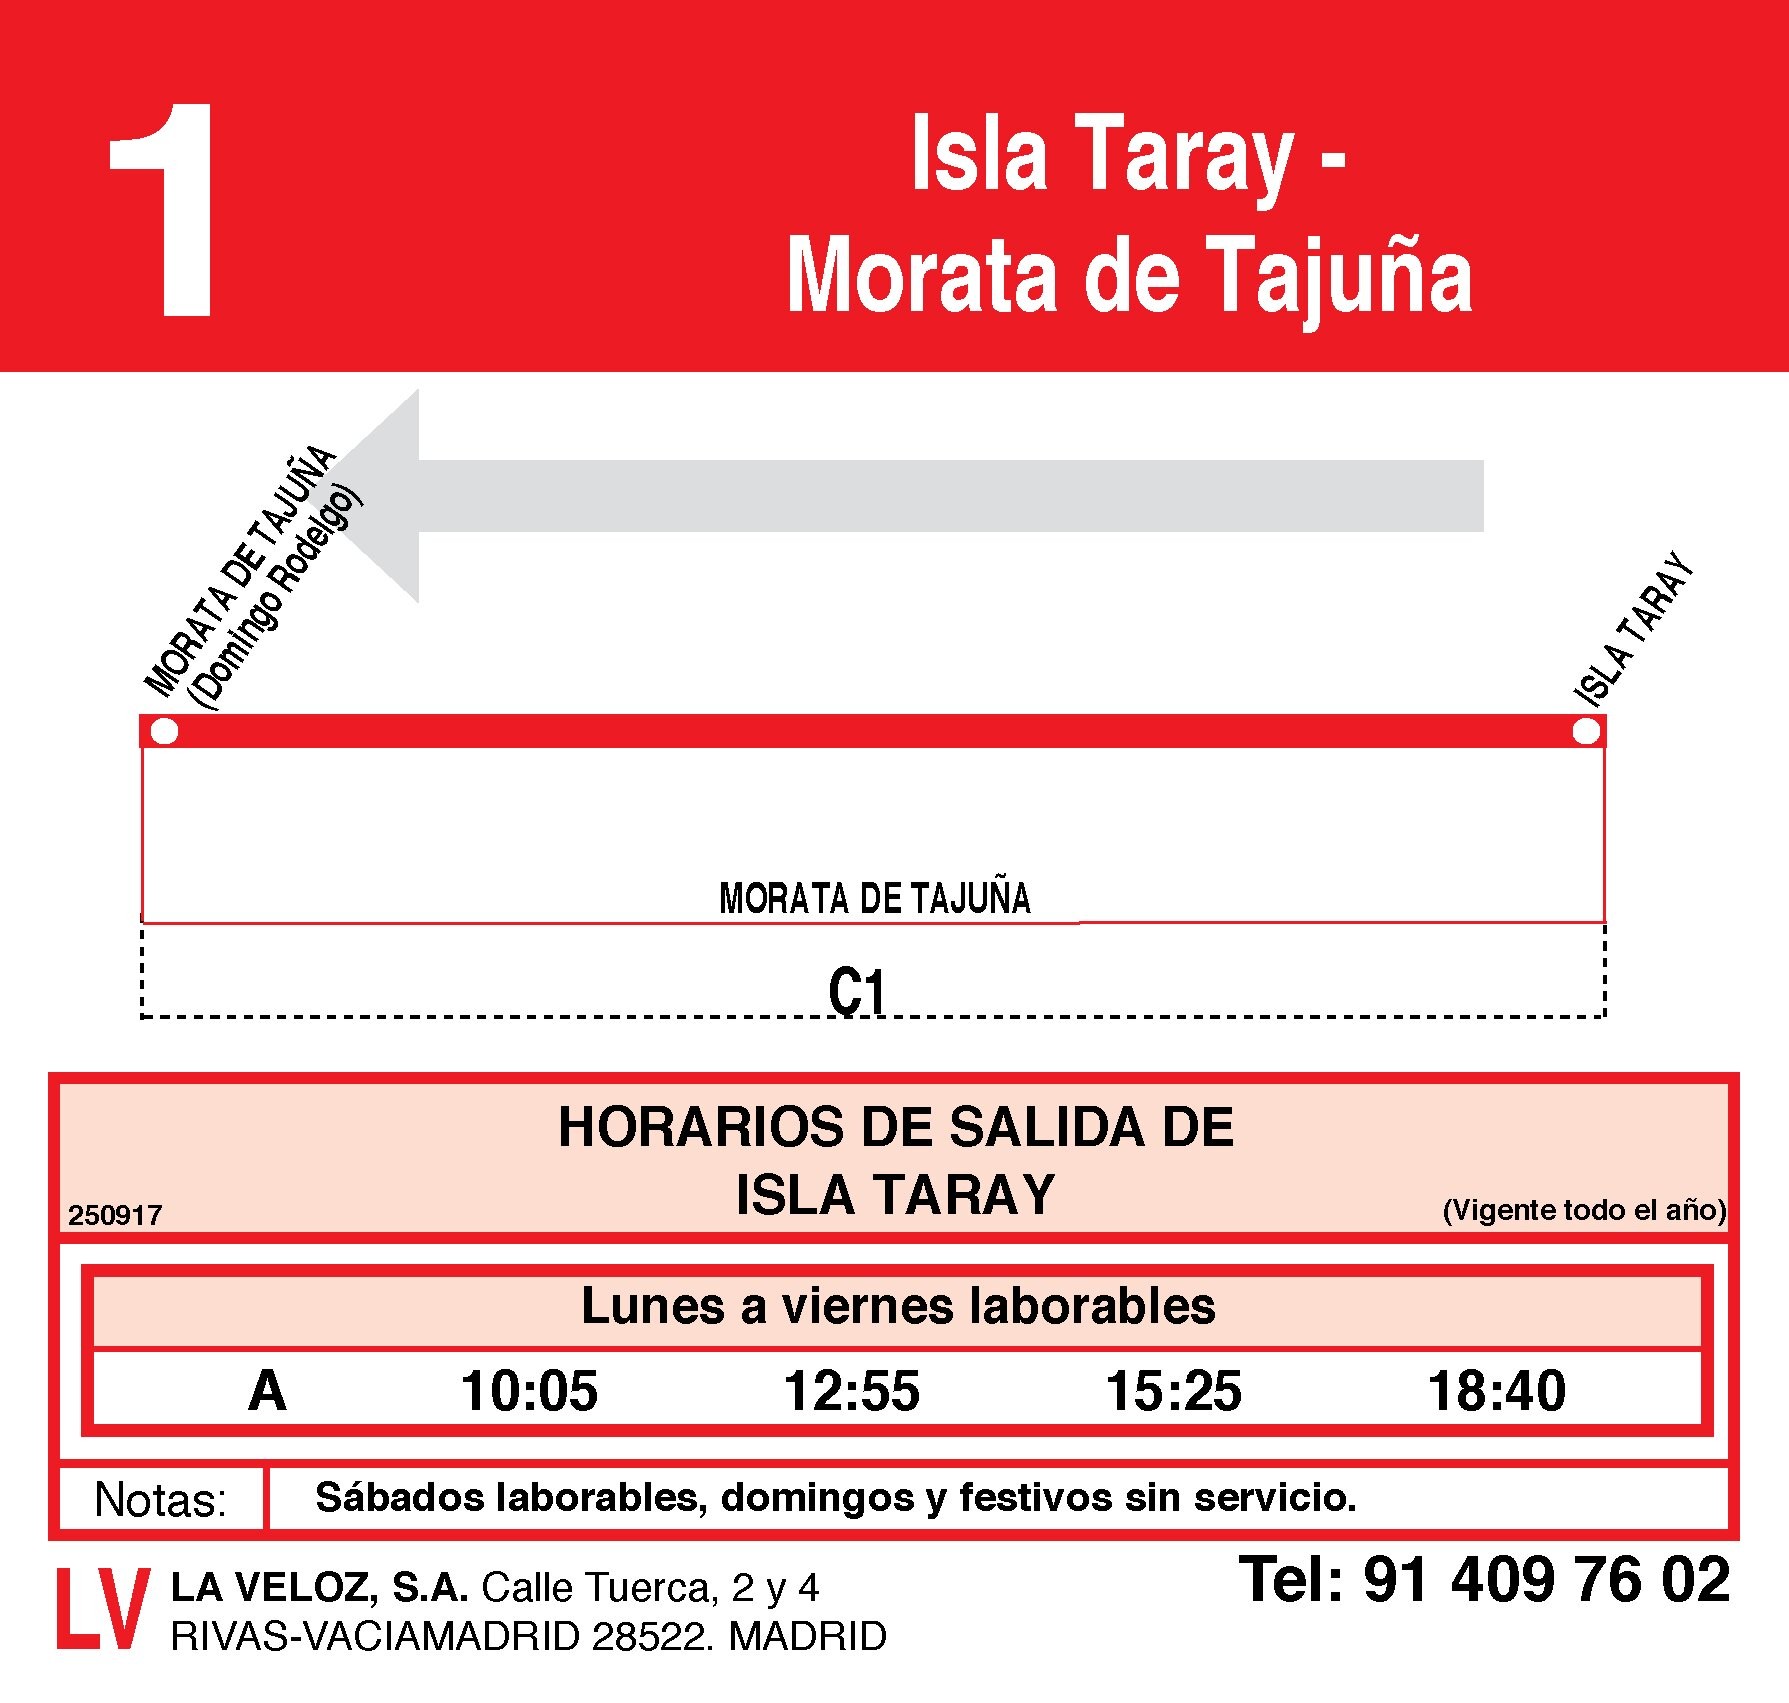 1 MORATA DE TAJUÑA - ILSA TARAY